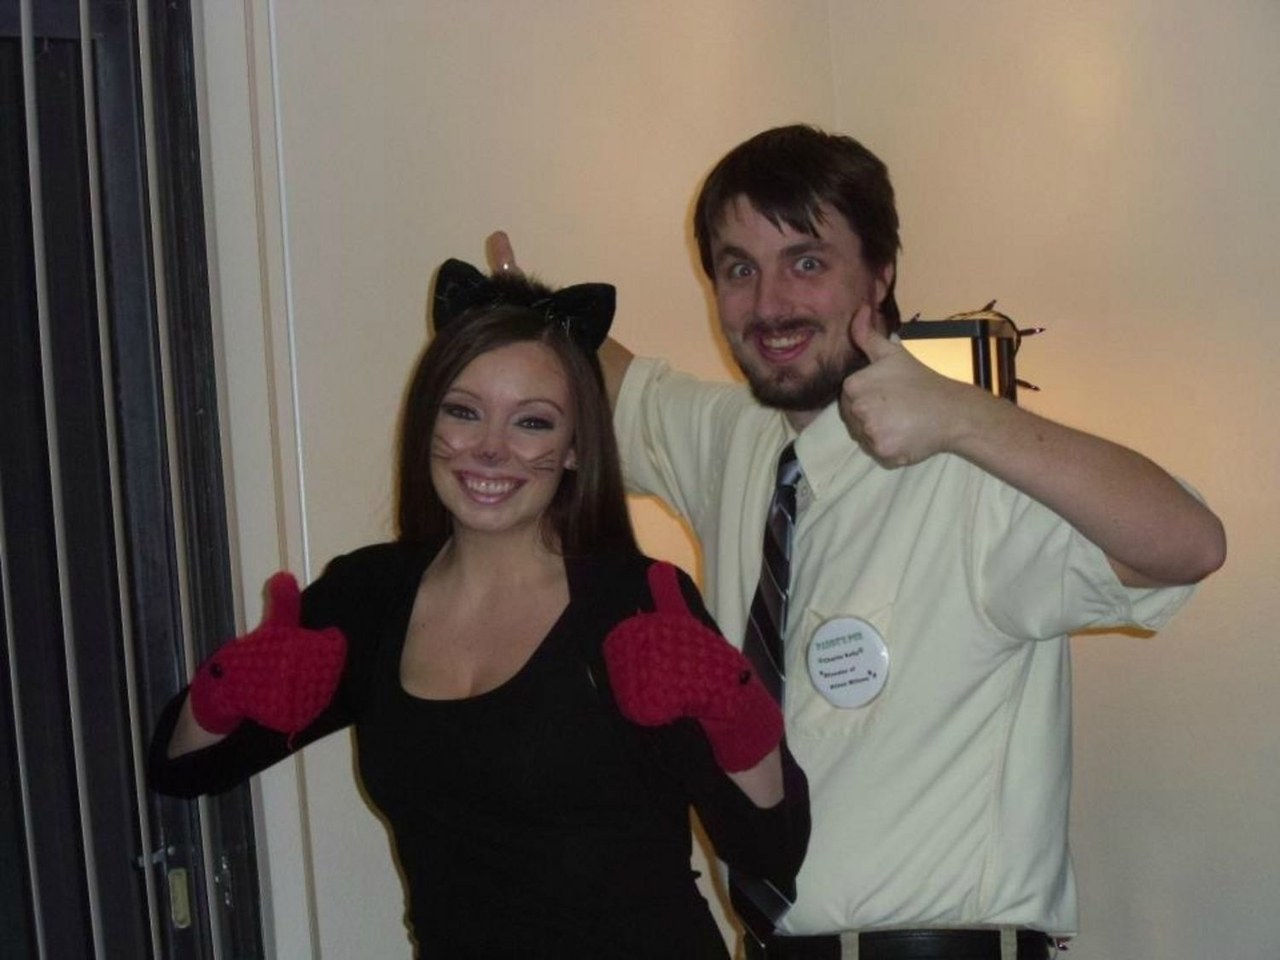 kitten mittens costume